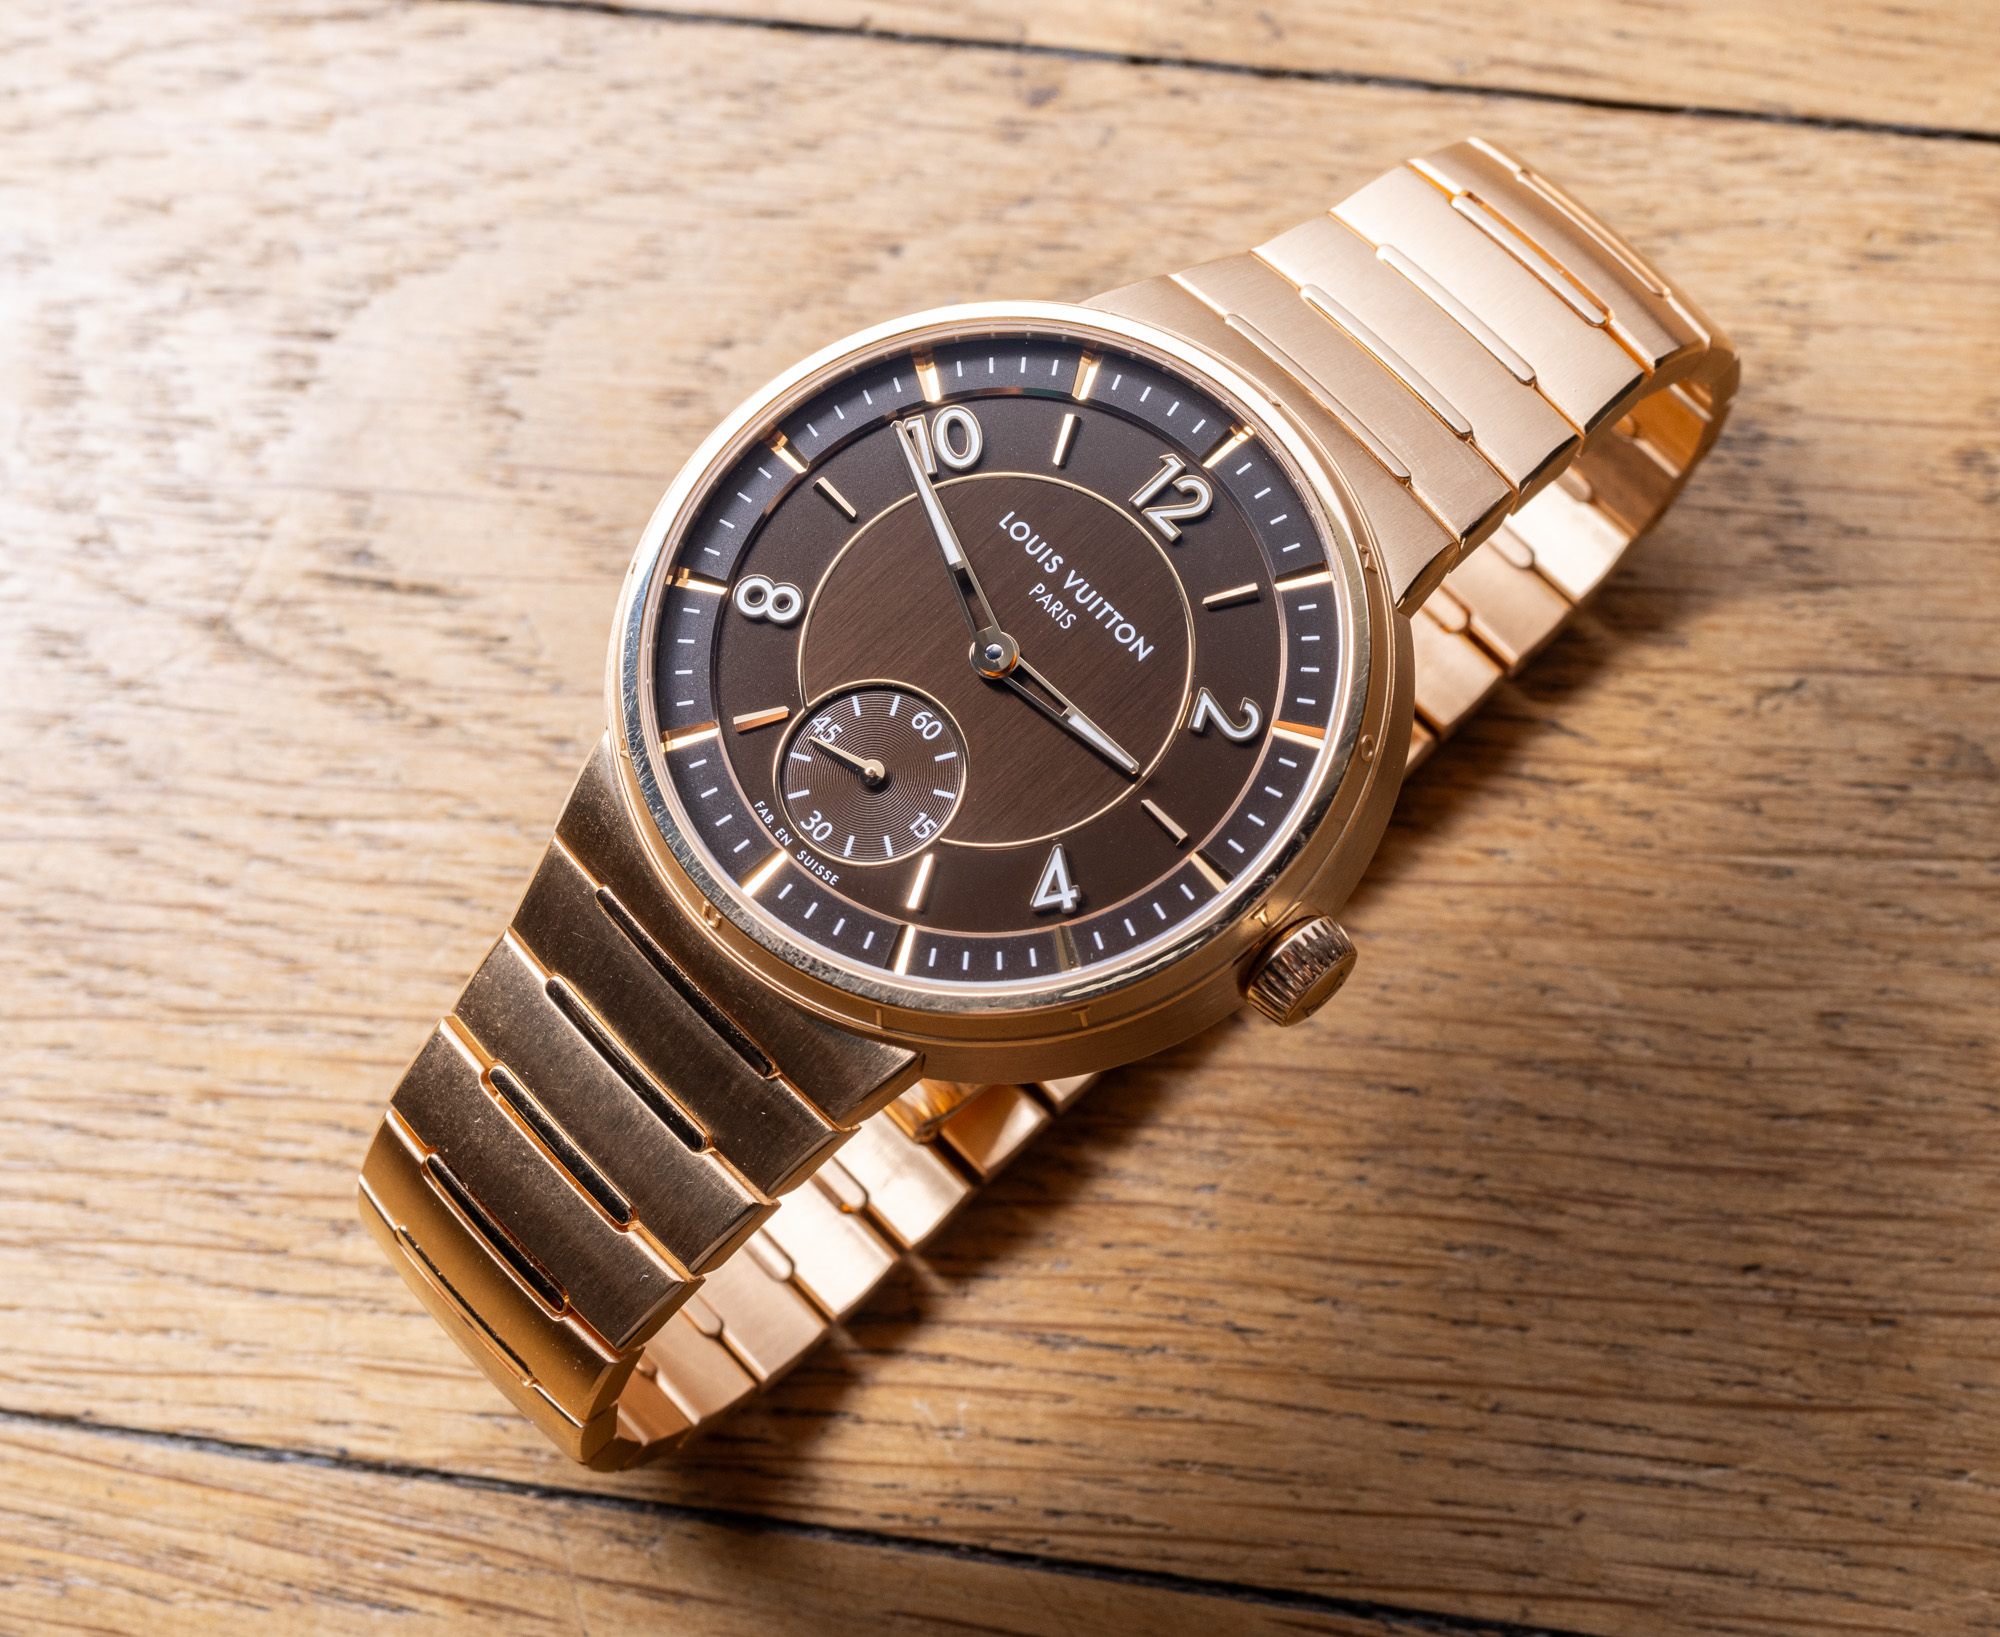 Louis Vuitton перезапускает модель Tambour в качестве высококлассных часов с интегрированным браслетом